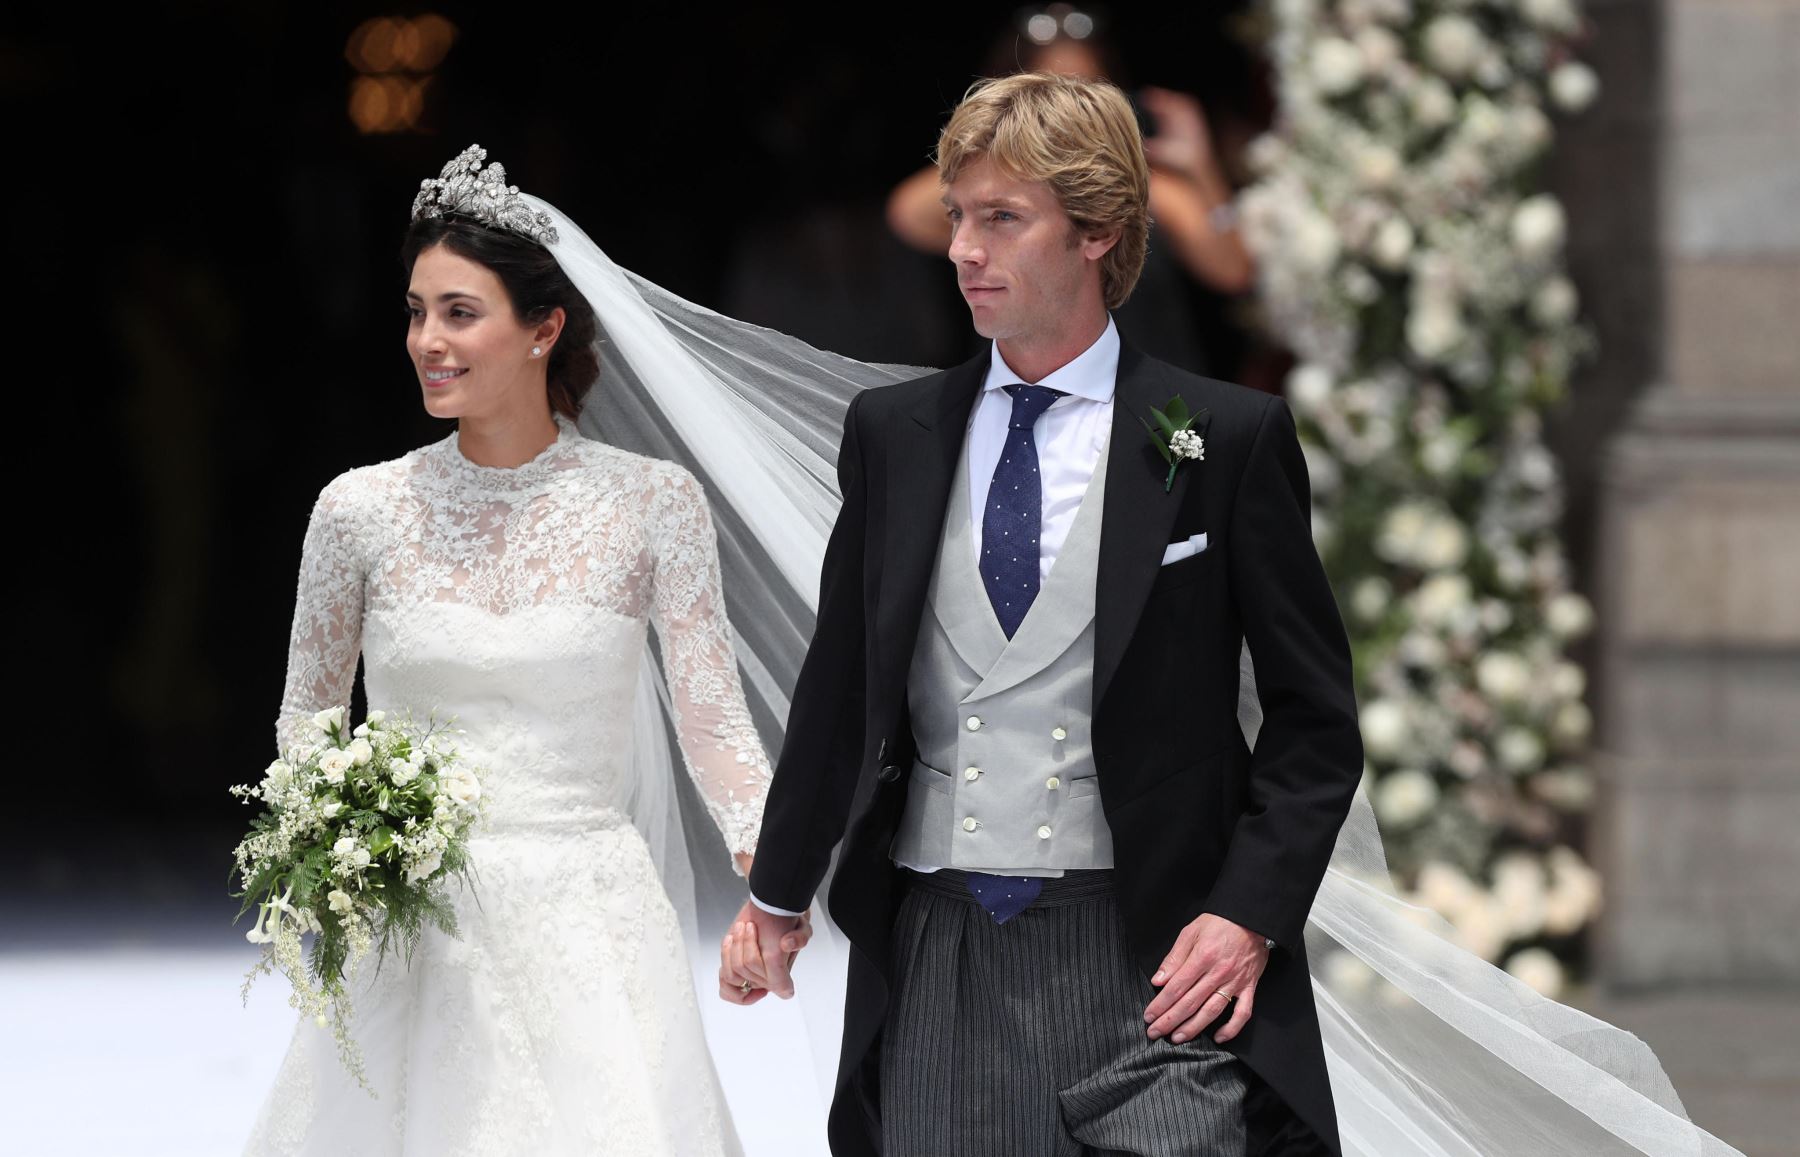 Boda de Alessandra de Osma y el príncipe Christian de Hannover. Foto: AFP.